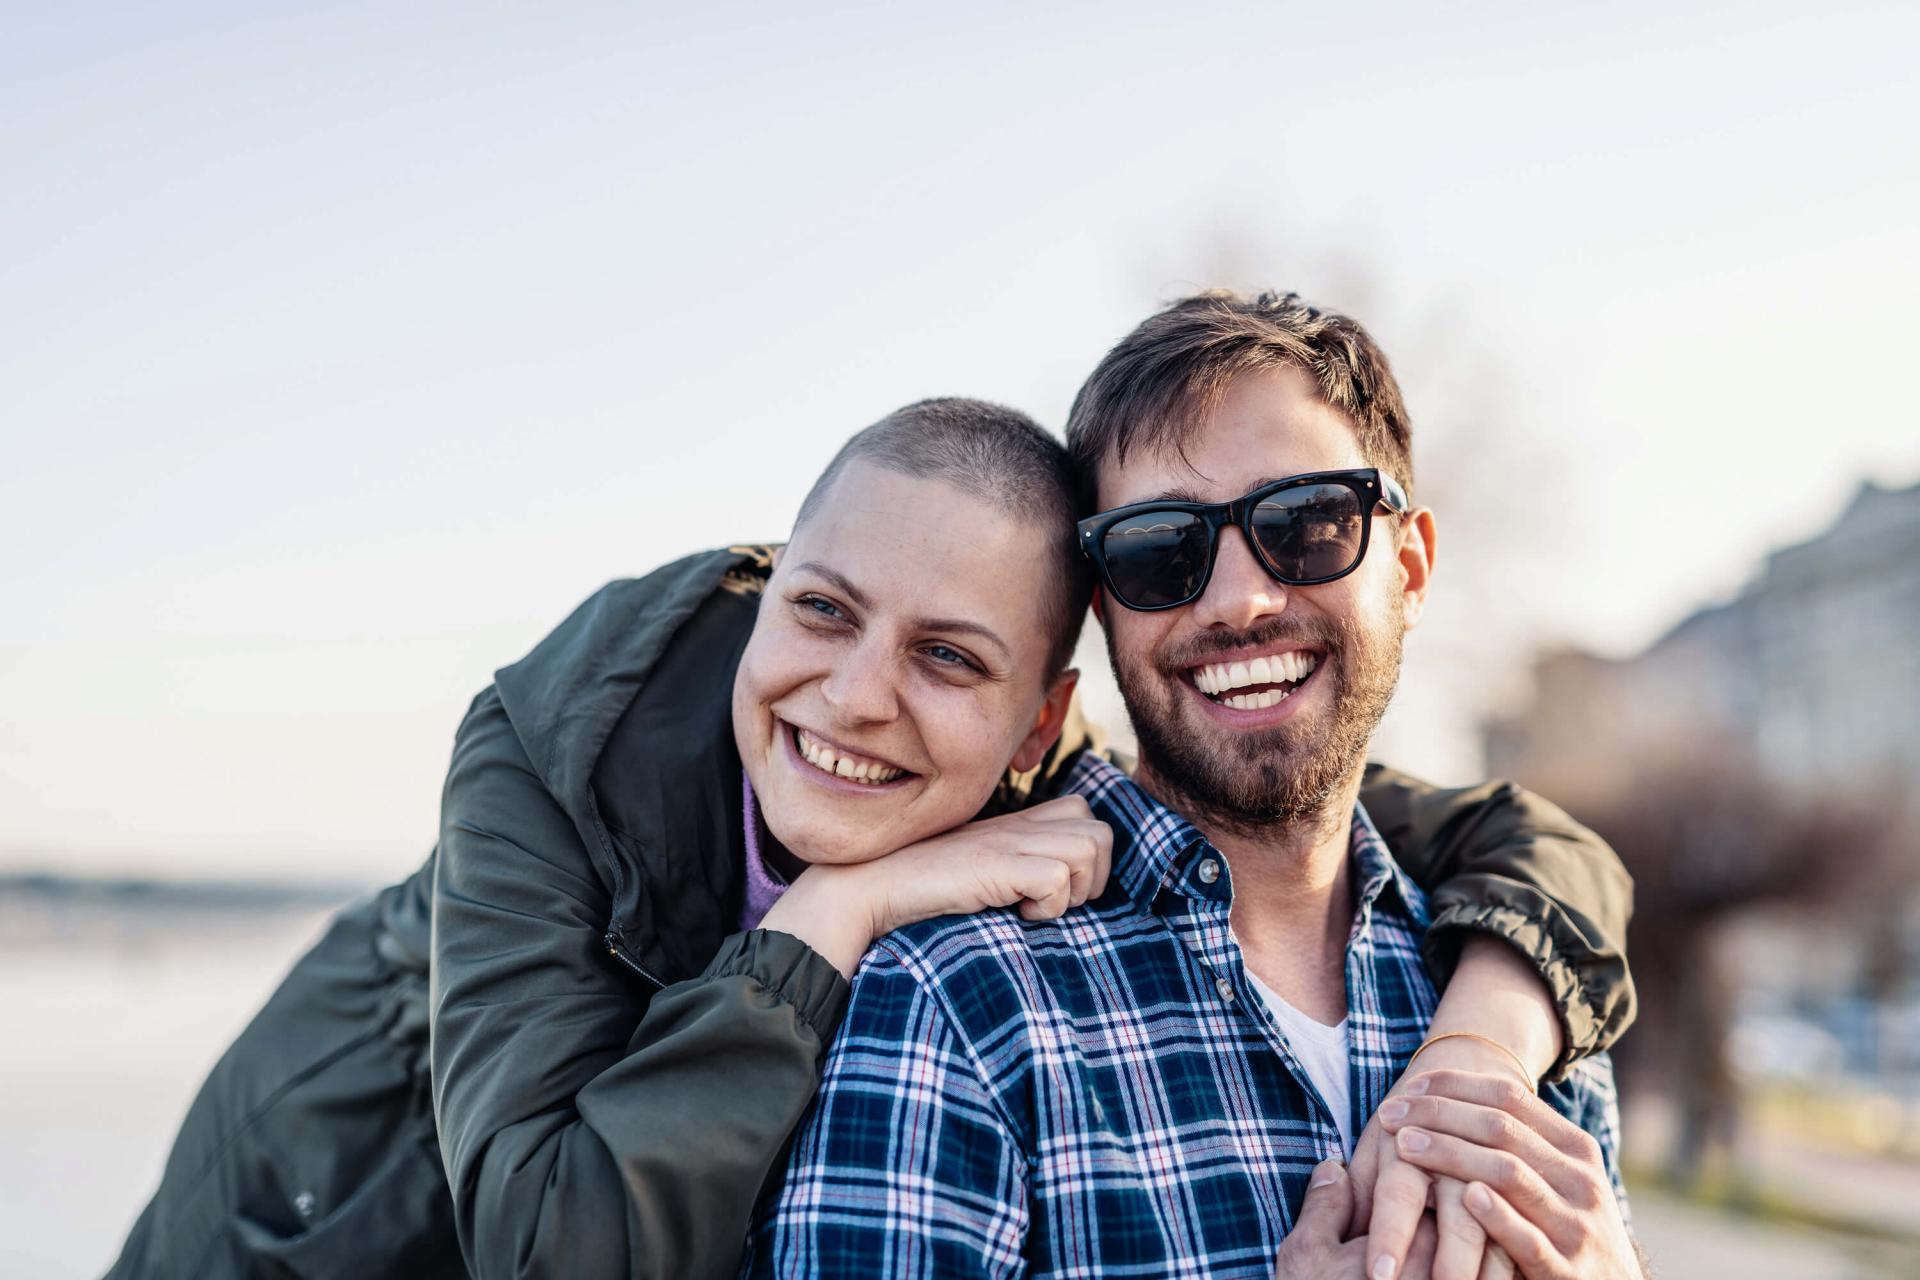 Krebskranke Frau steht in der Natur mit ihrem Freund und lächeln beide.